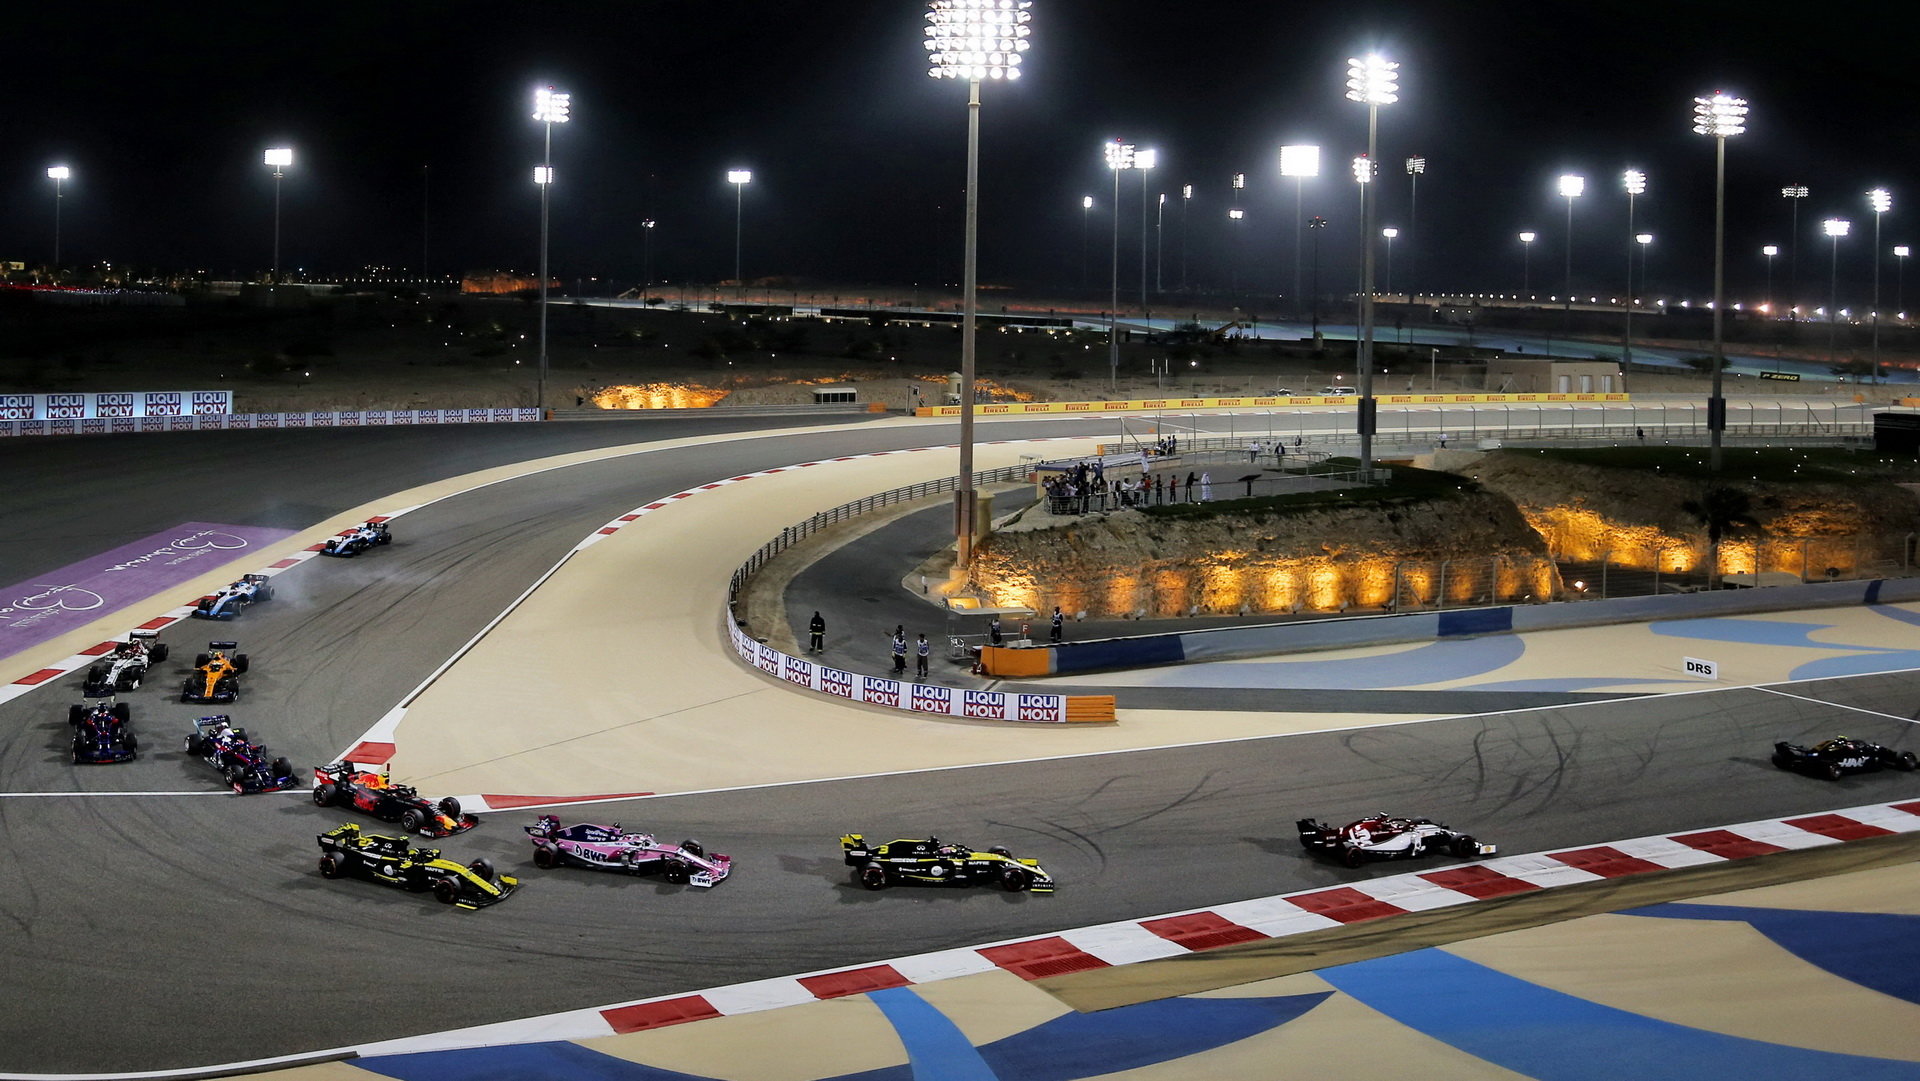 Letos budou mít fanoušci možnost sledovat bahrajnský závod pouze v televizi